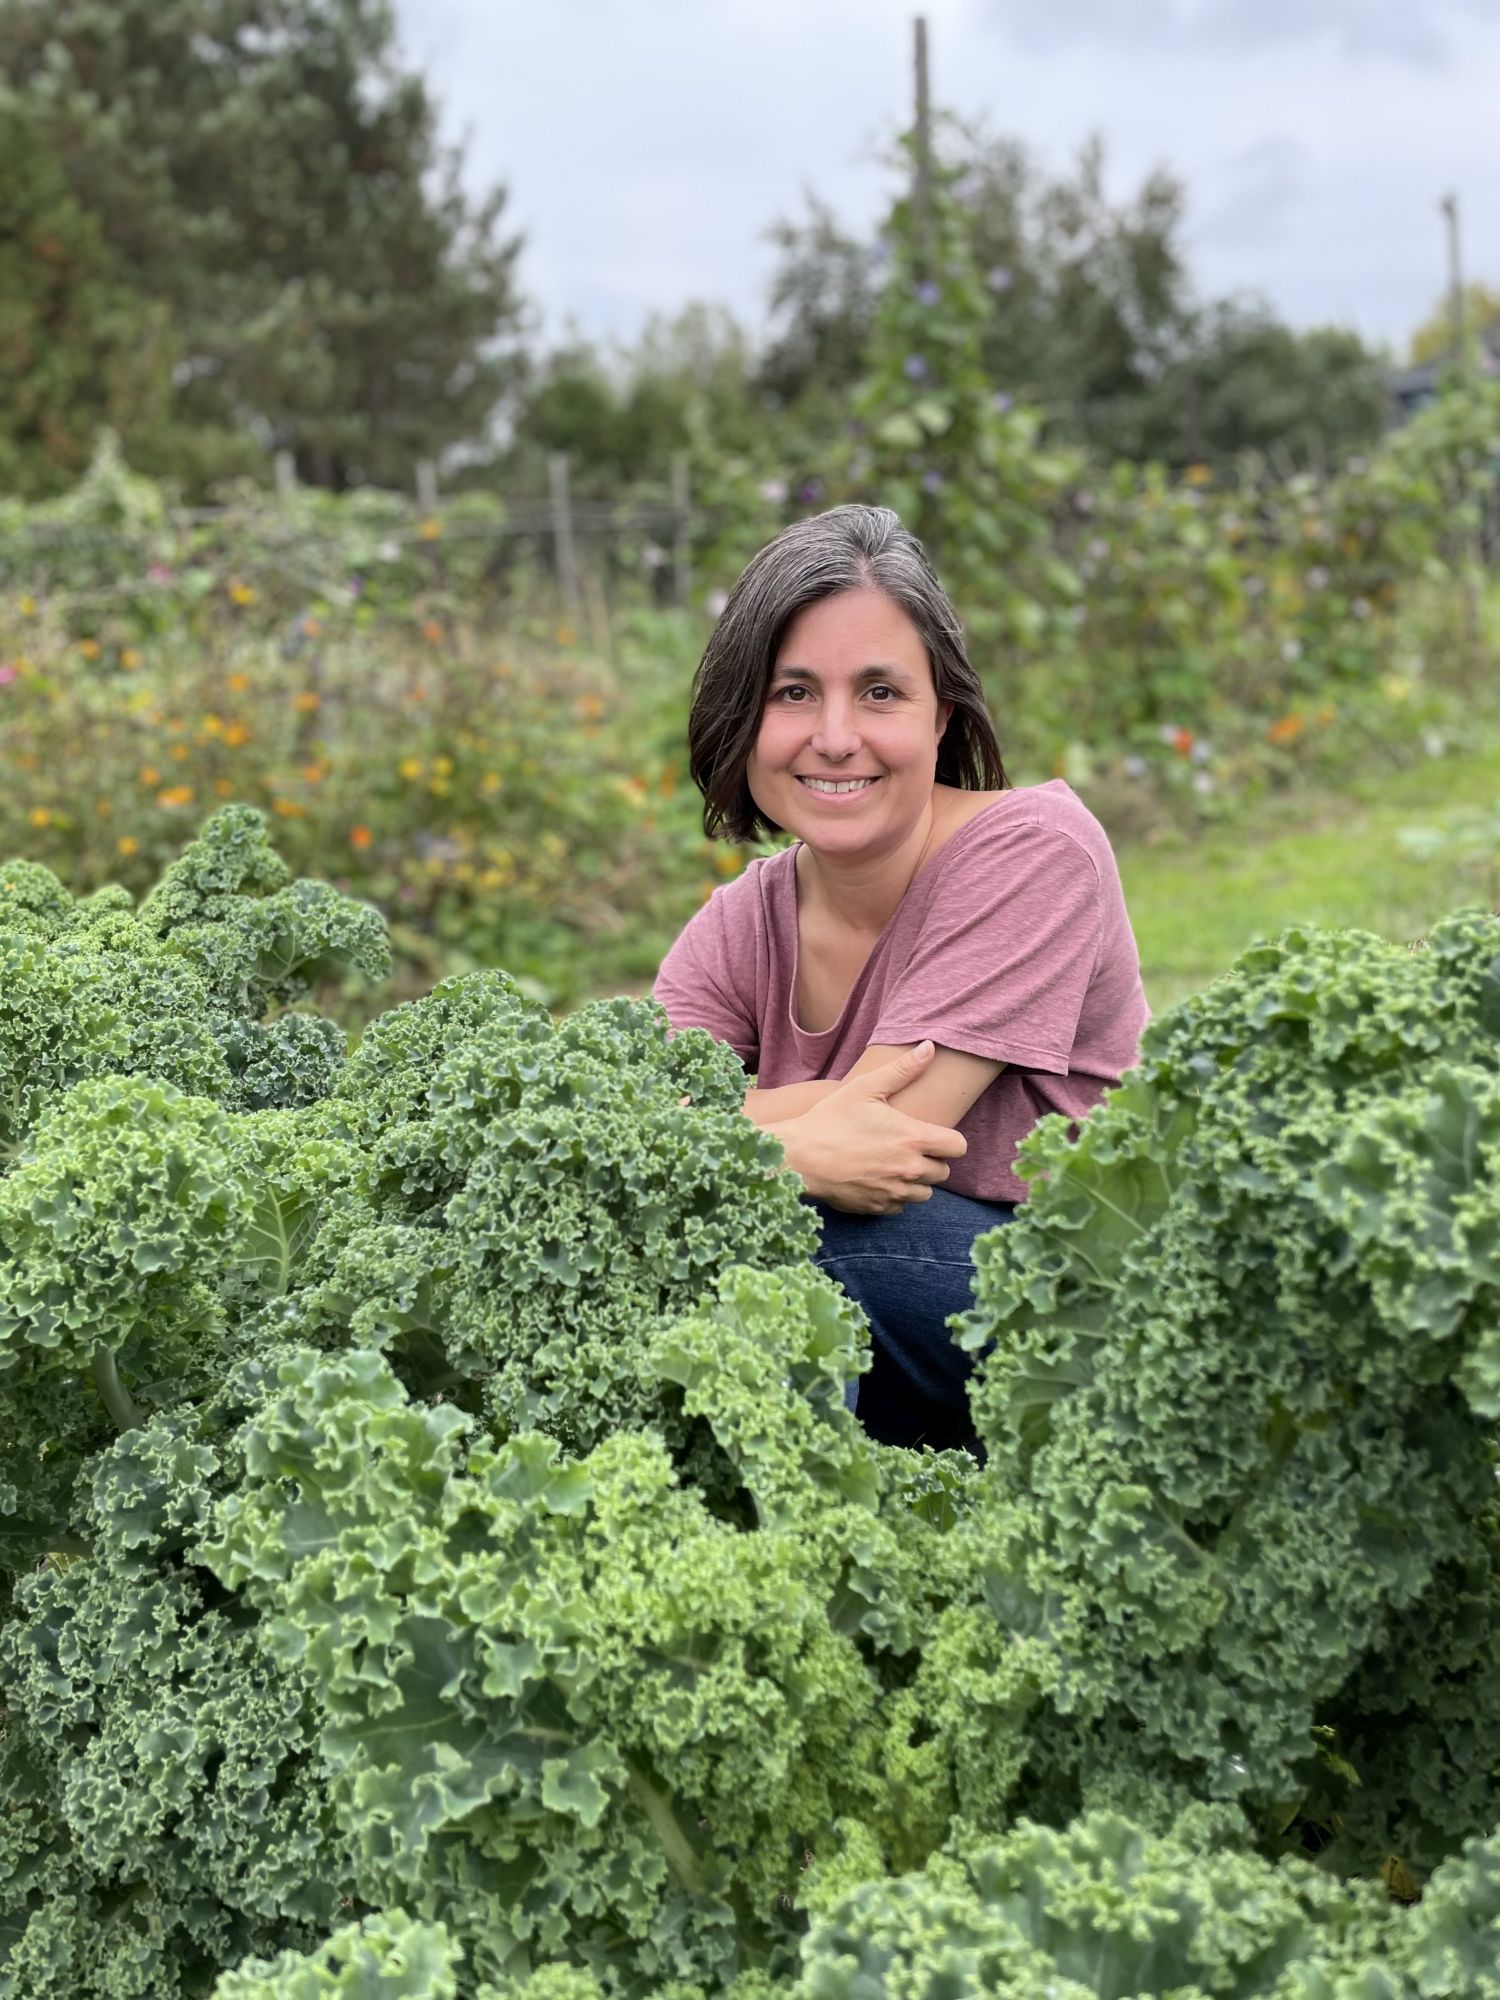 Sarah Elton, behind some kale growing in a garden